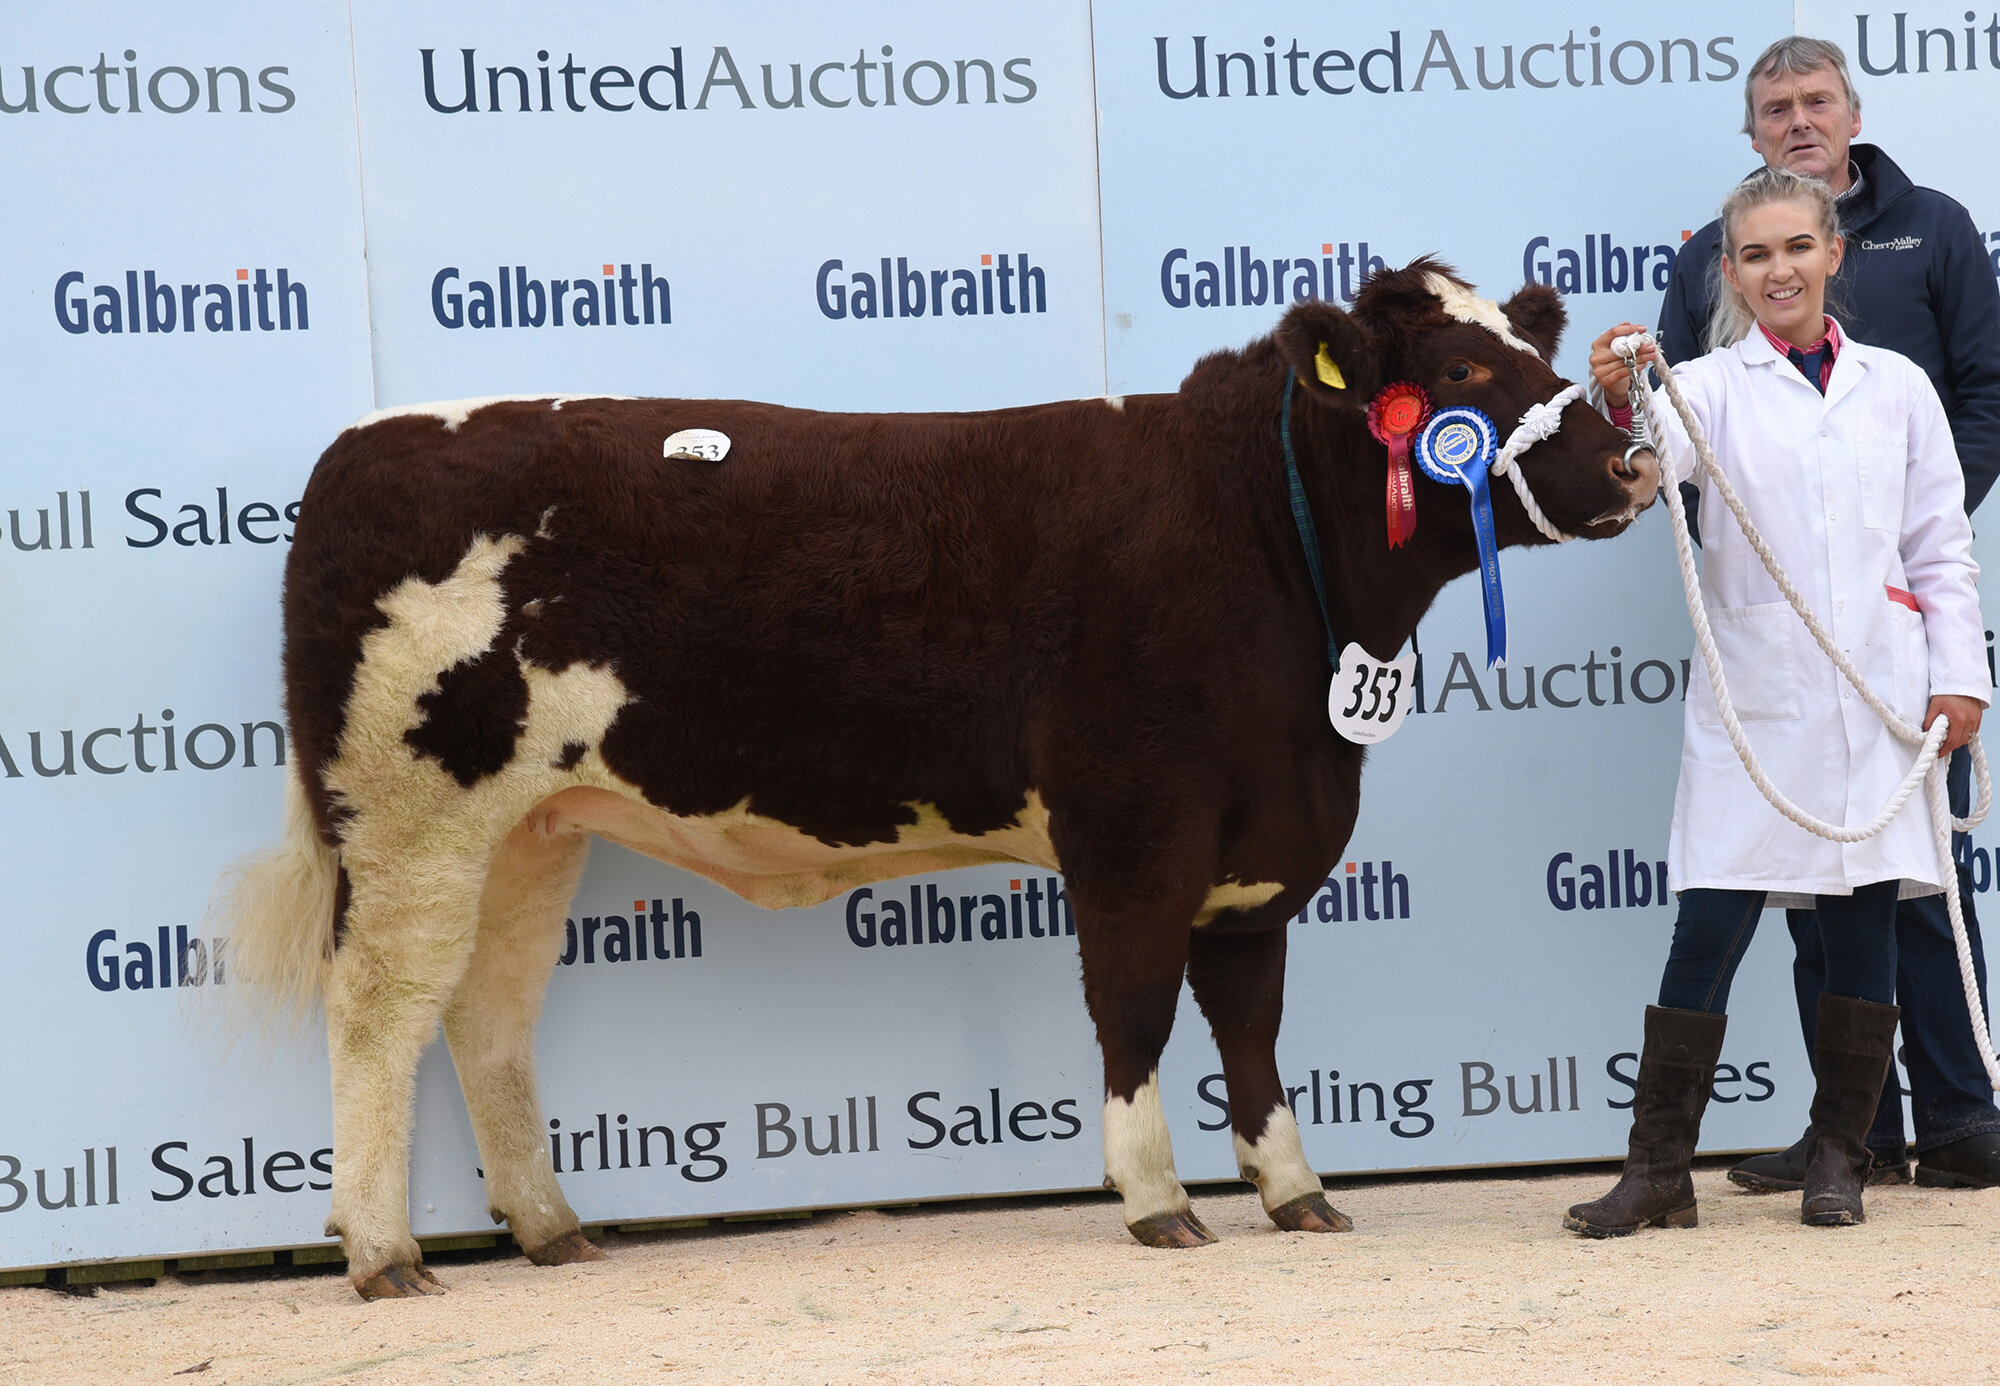 Stirling Bull Sales - October